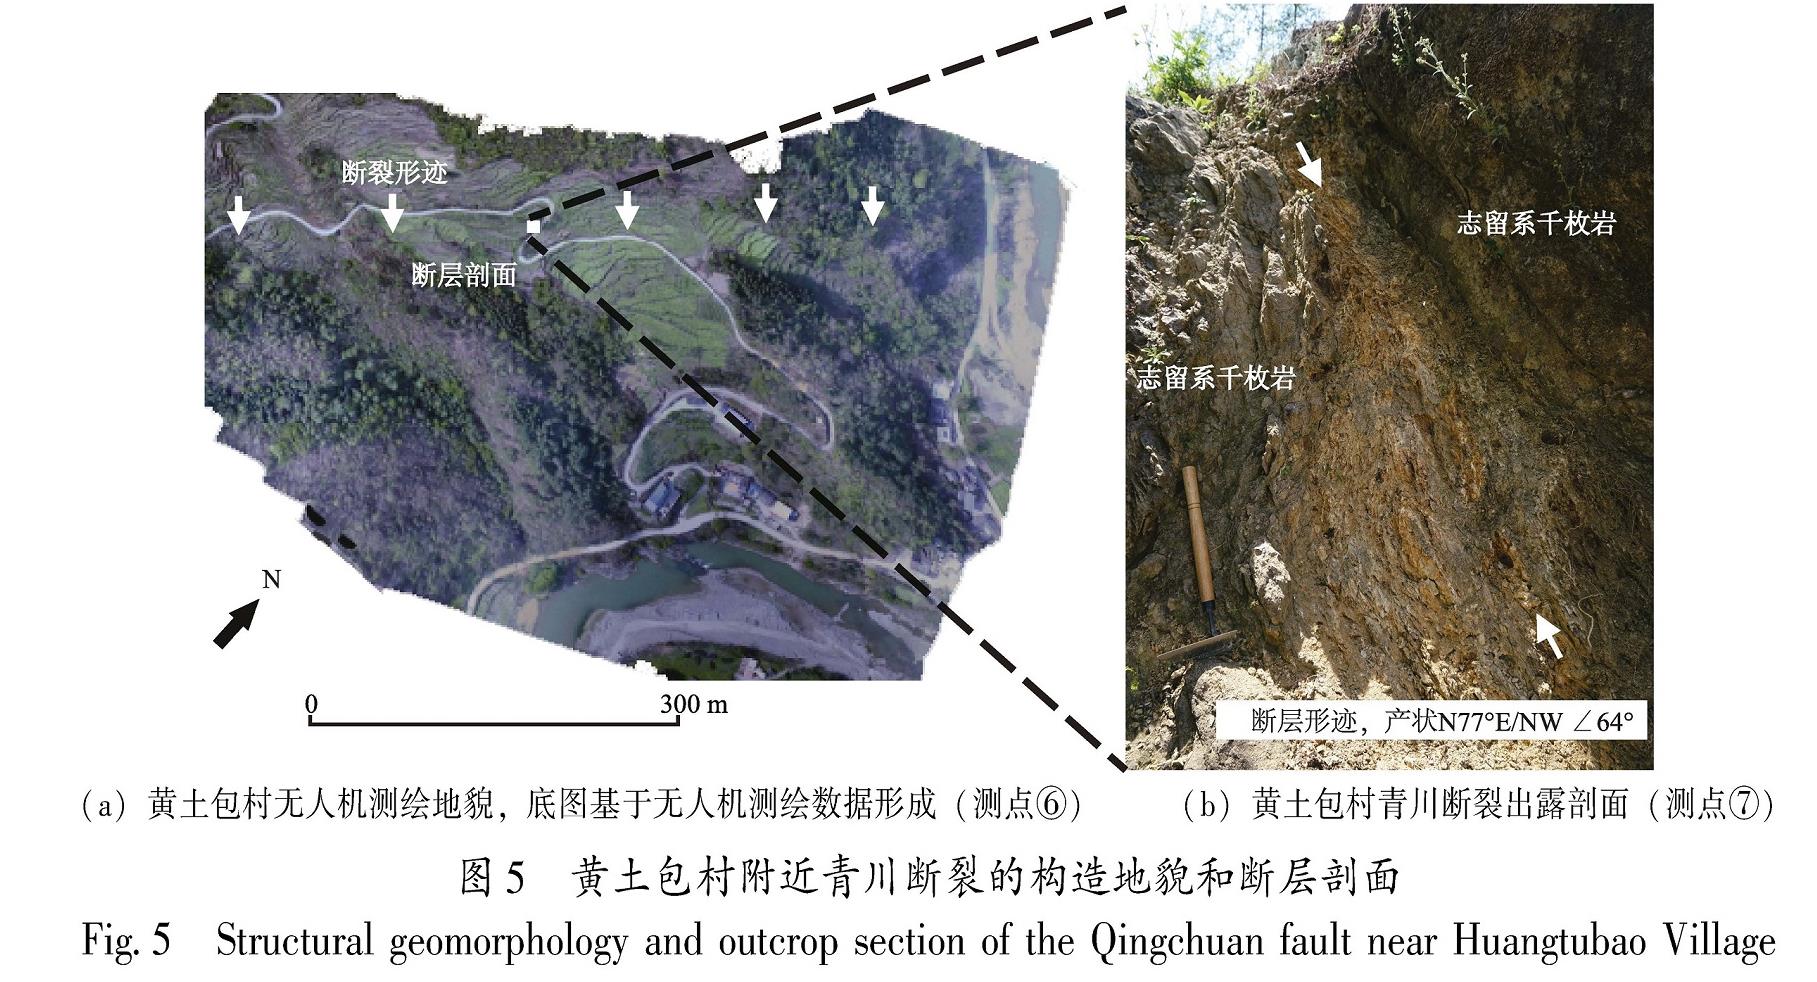 图5 黄土包村附近青川断裂的构造地貌和断层剖面<br/>Fig.5 Structural geomorphology and outcrop section of the Qingchuan fault near Huangtubao Village